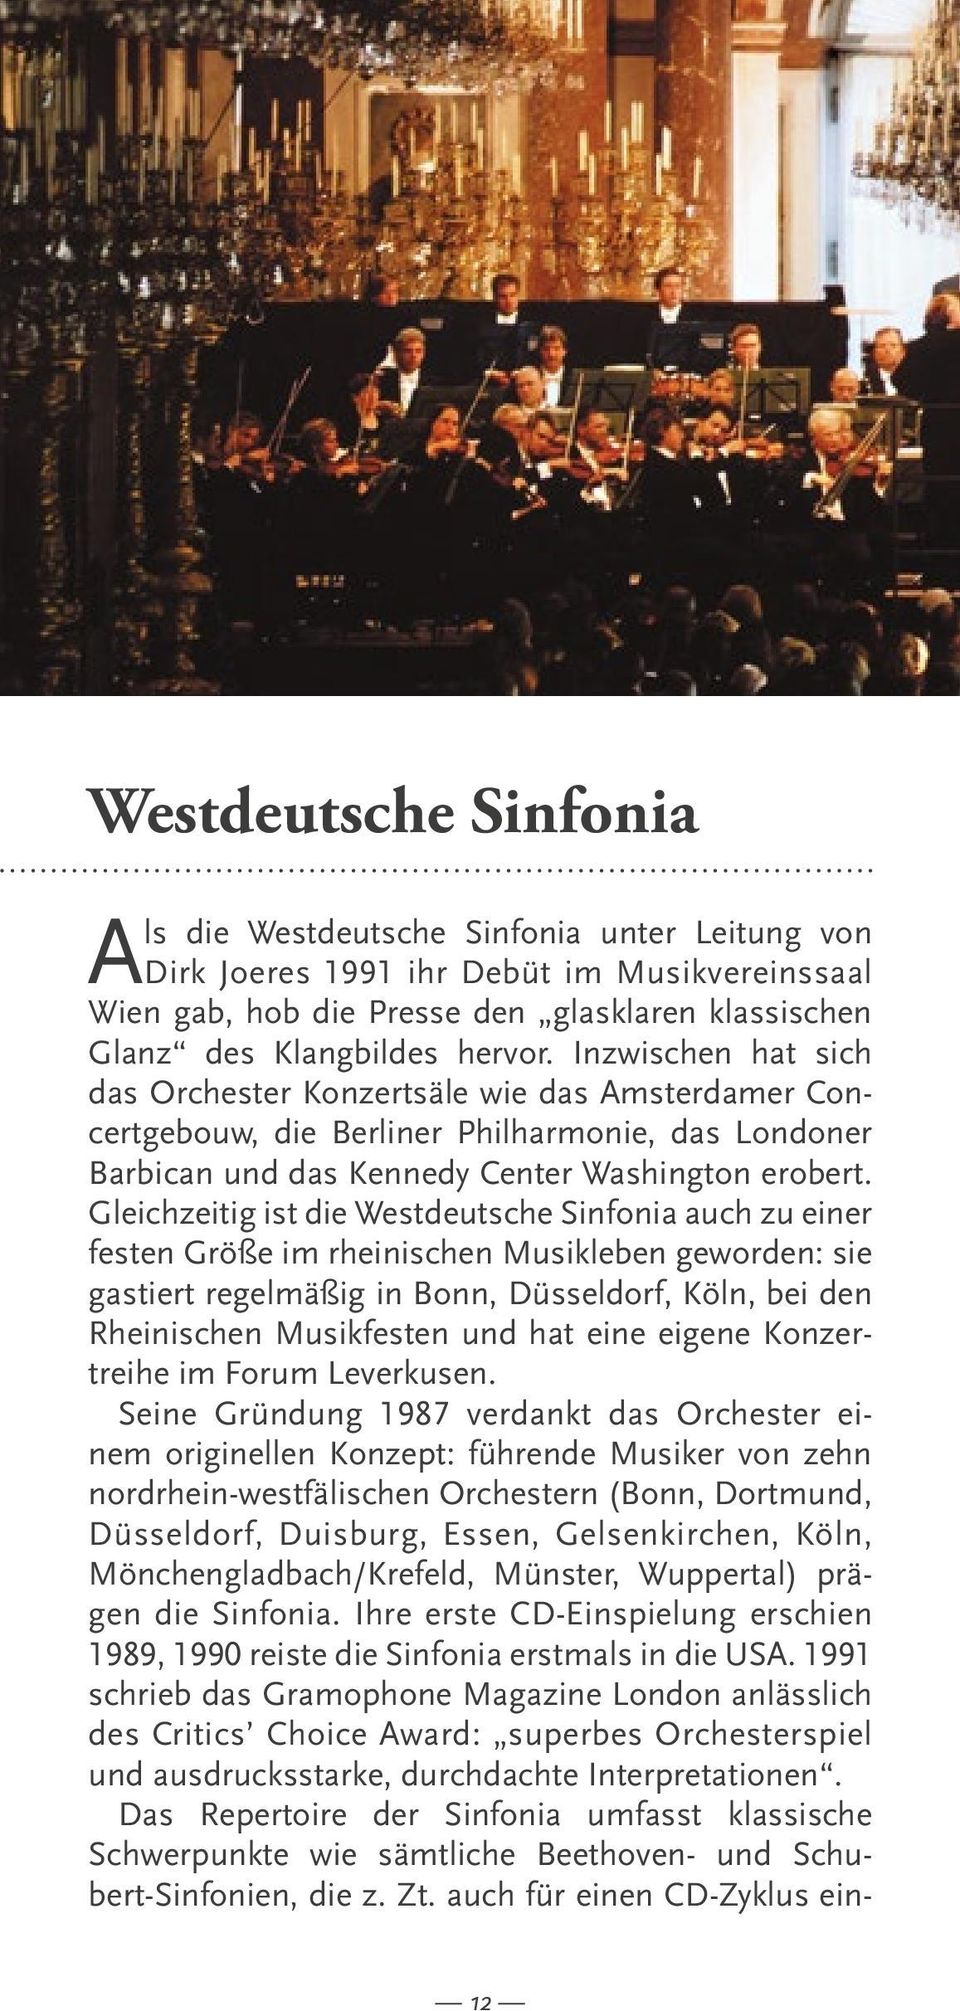 Gleichzeitig ist die Westdeutsche Sinfonia auch zu einer festen Größe im rheinischen Musikleben geworden: sie gastiert regelmäßig in Bonn, Düsseldorf, Köln, bei den Rheinischen Musikfesten und hat